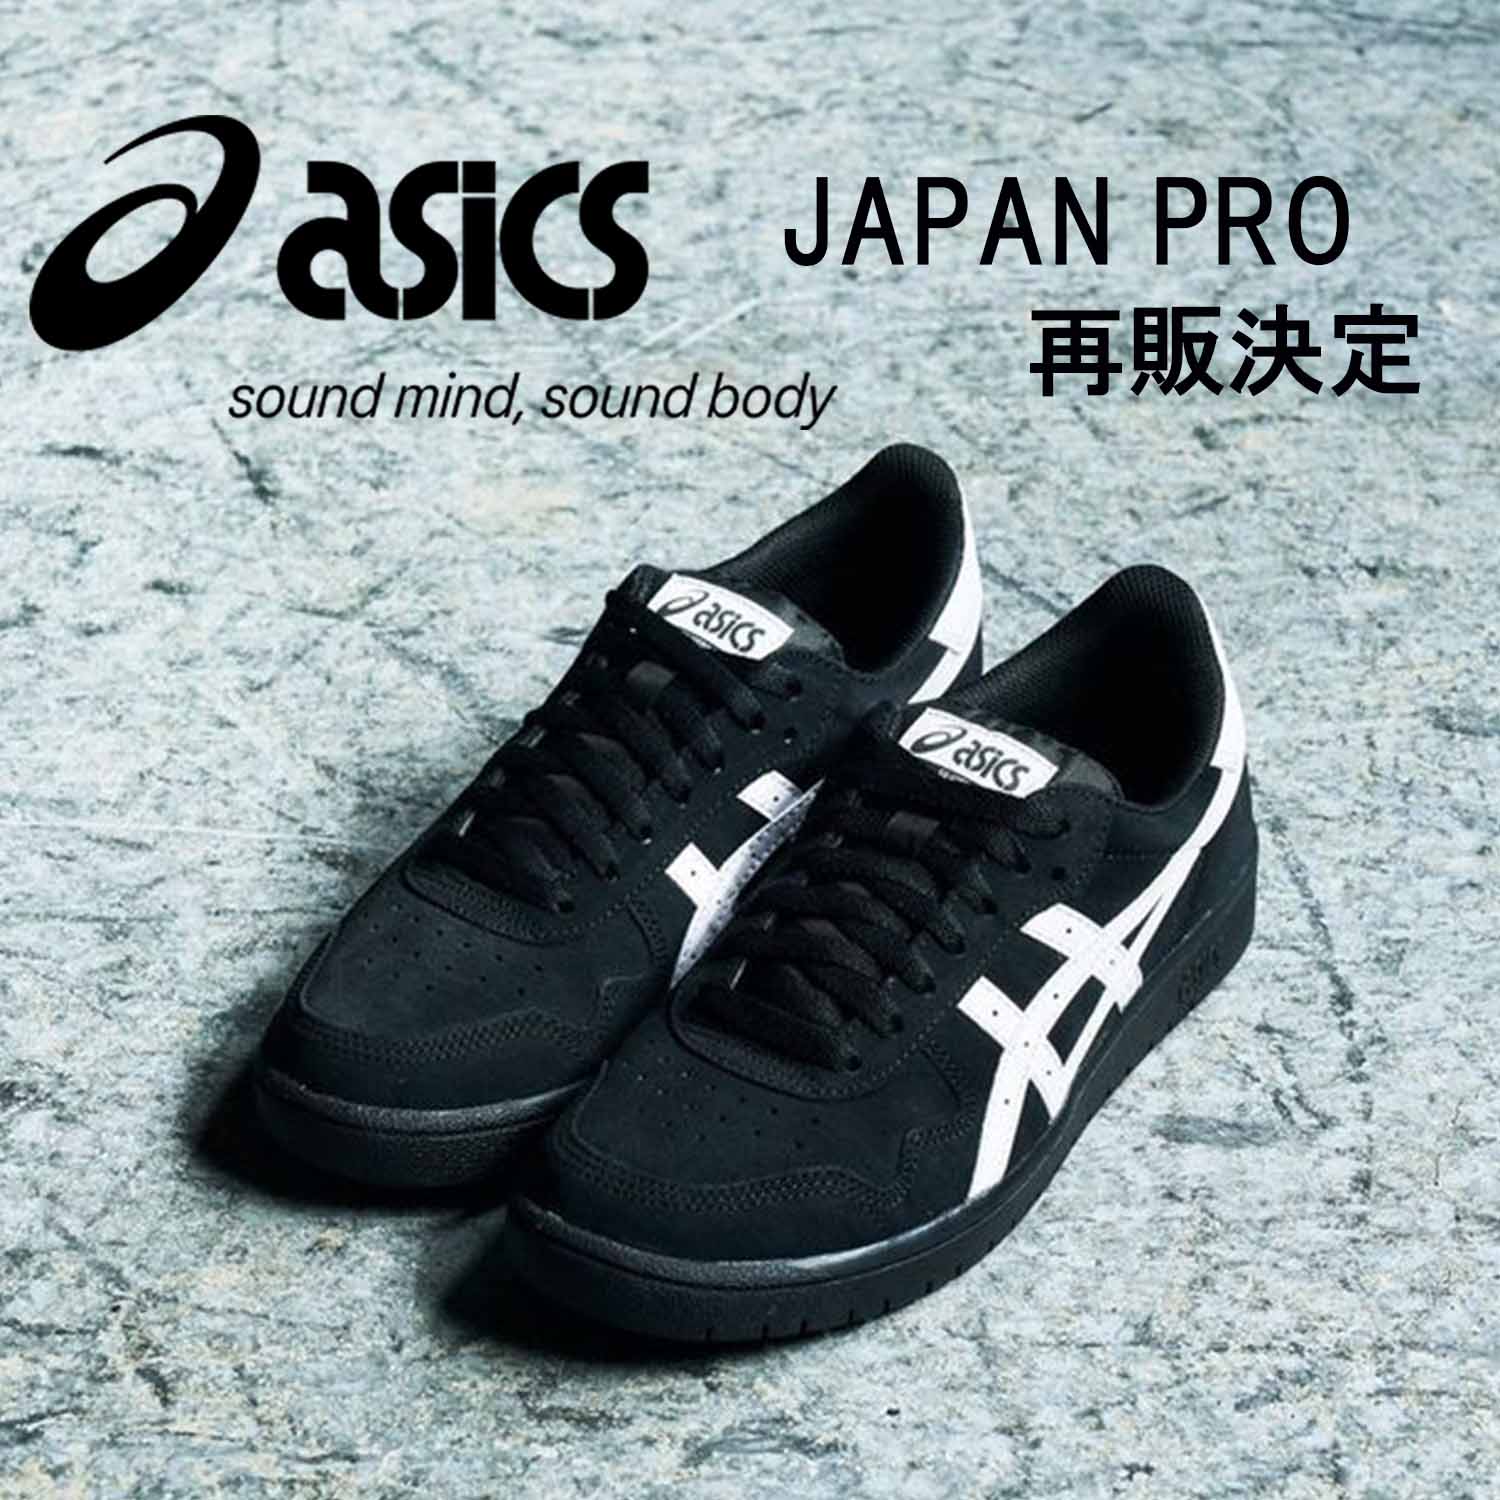 Asicsアシックス ジャパン プロ ブラック ホワイト